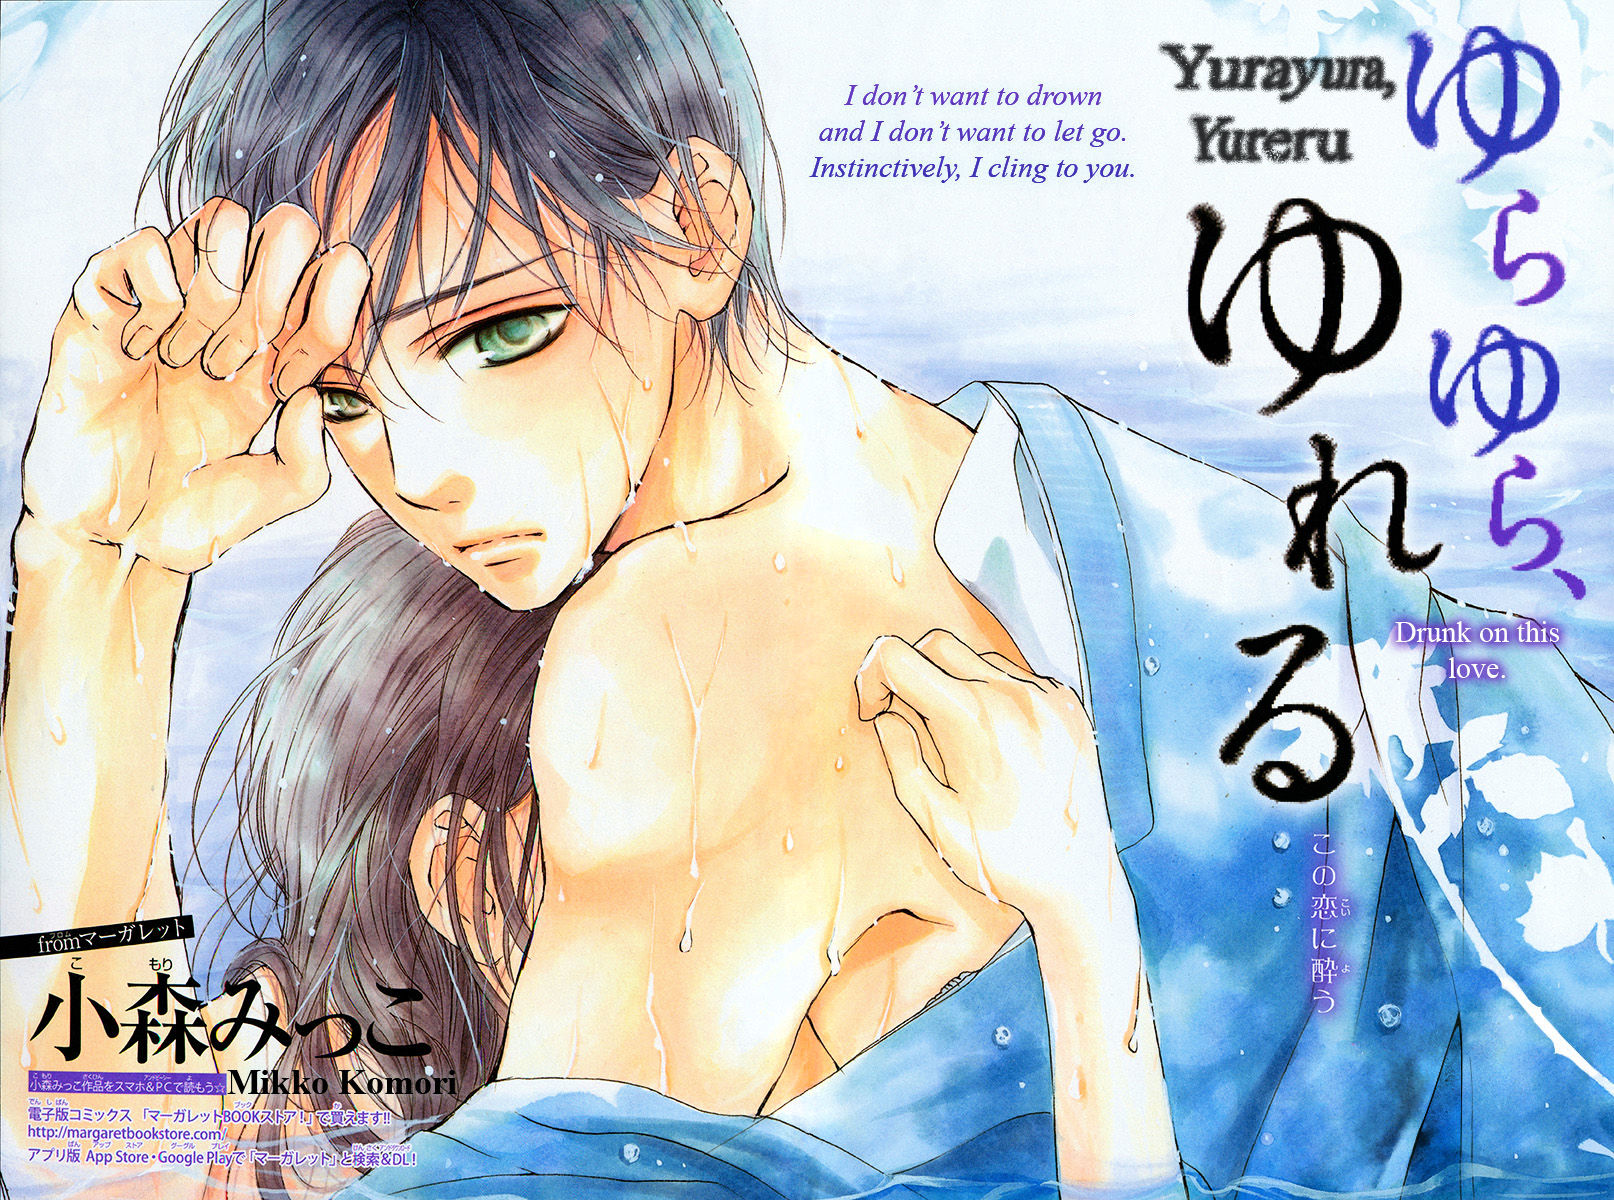 Yurayura, Yureru - Page 3